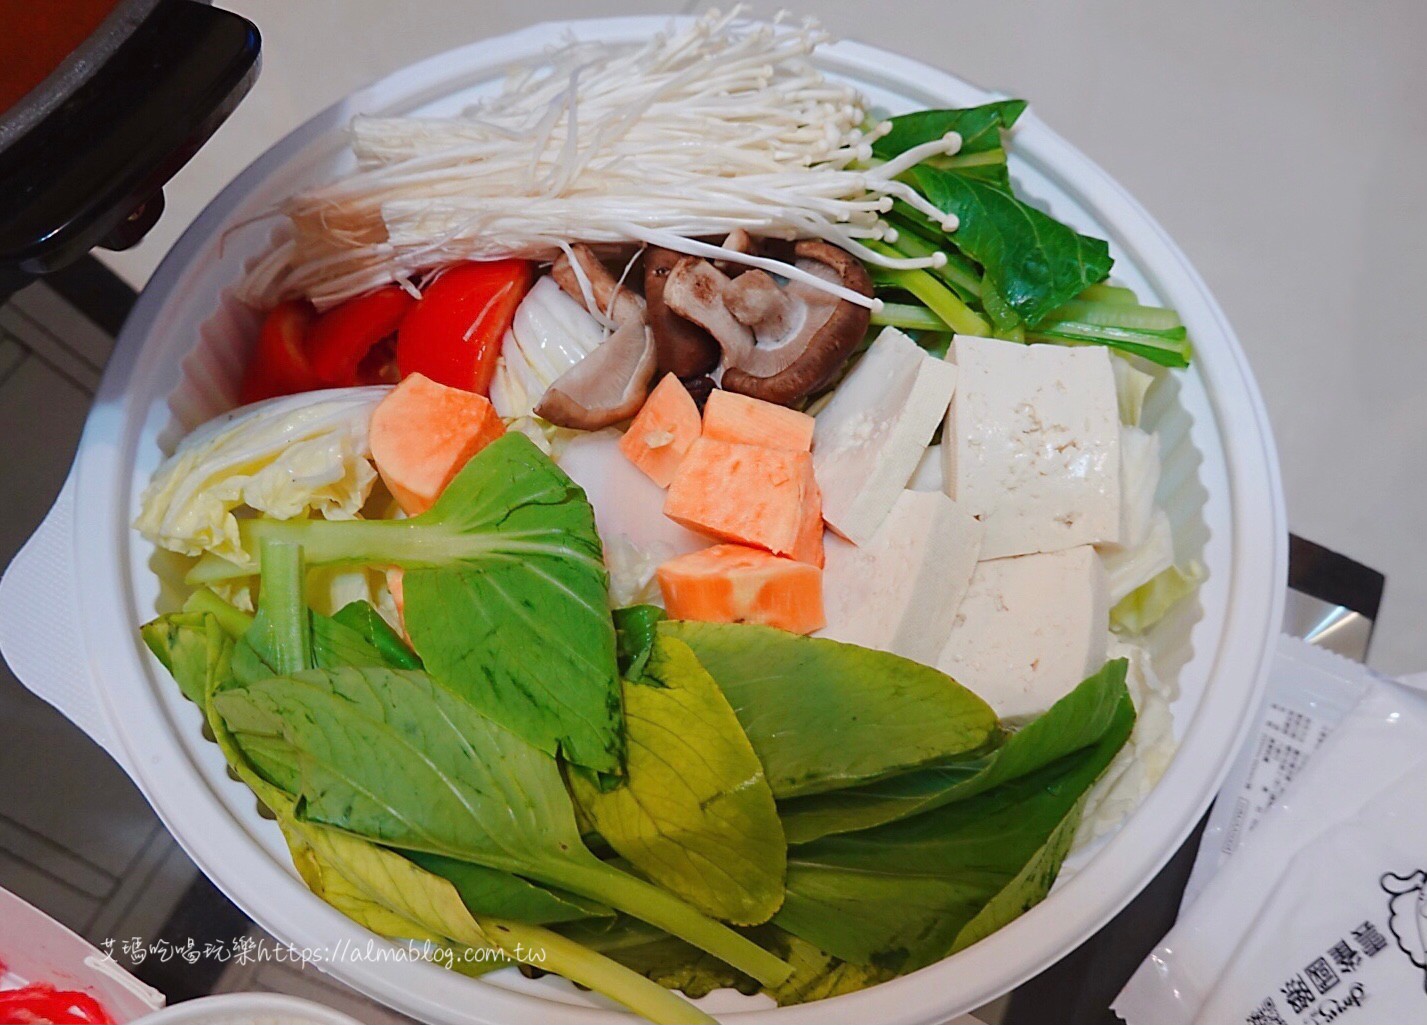 涮乃葉 syabu-yo 日式涮涮鍋吃到飽,火鍋,防疫餐